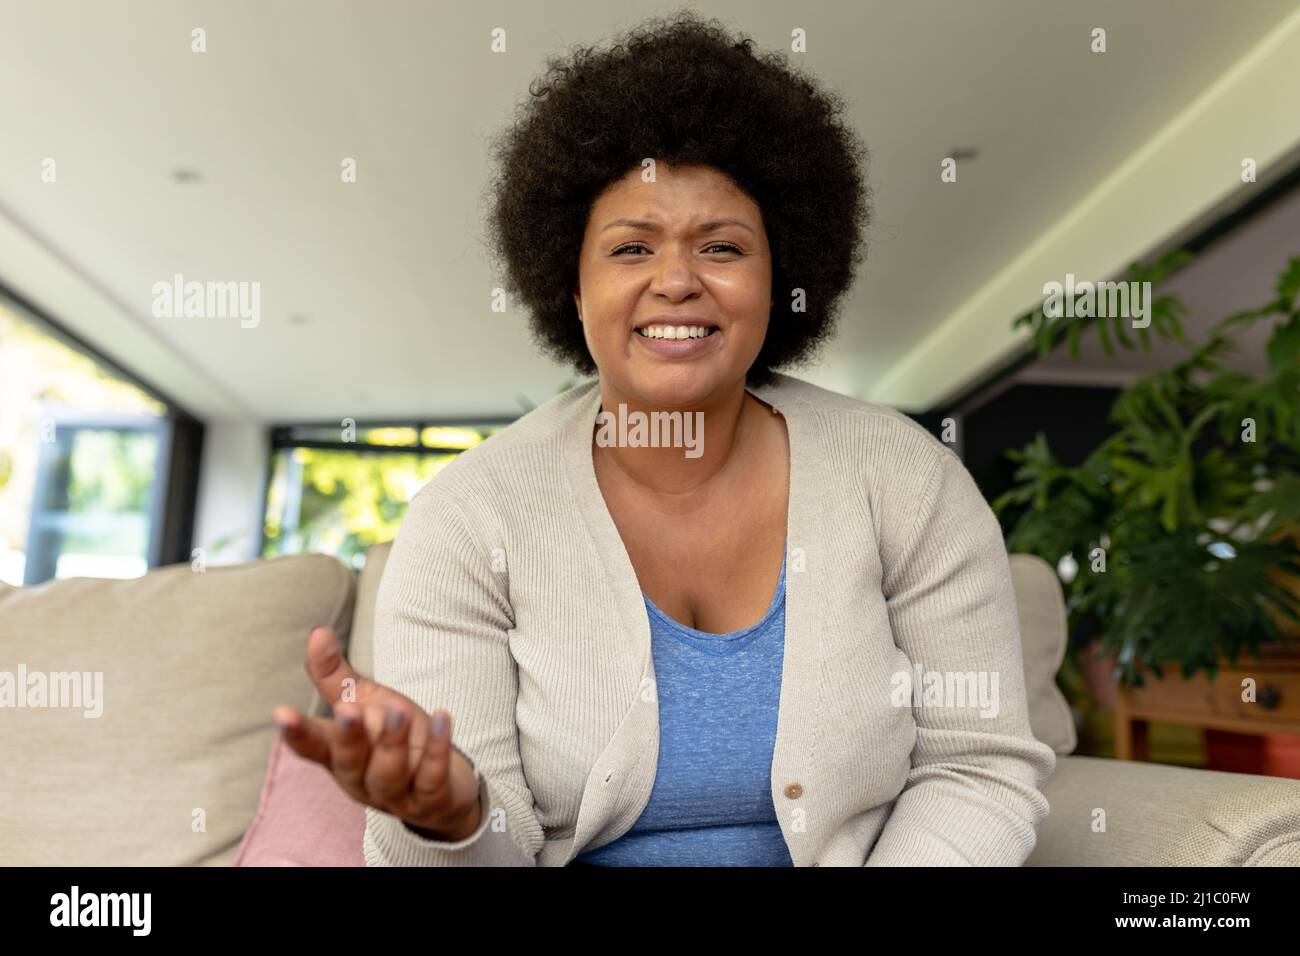 Portrait d'une femme mi-adulte afro-américaine souriante en train de gesturer lors d'une vidéoconférence à la maison Banque D'Images